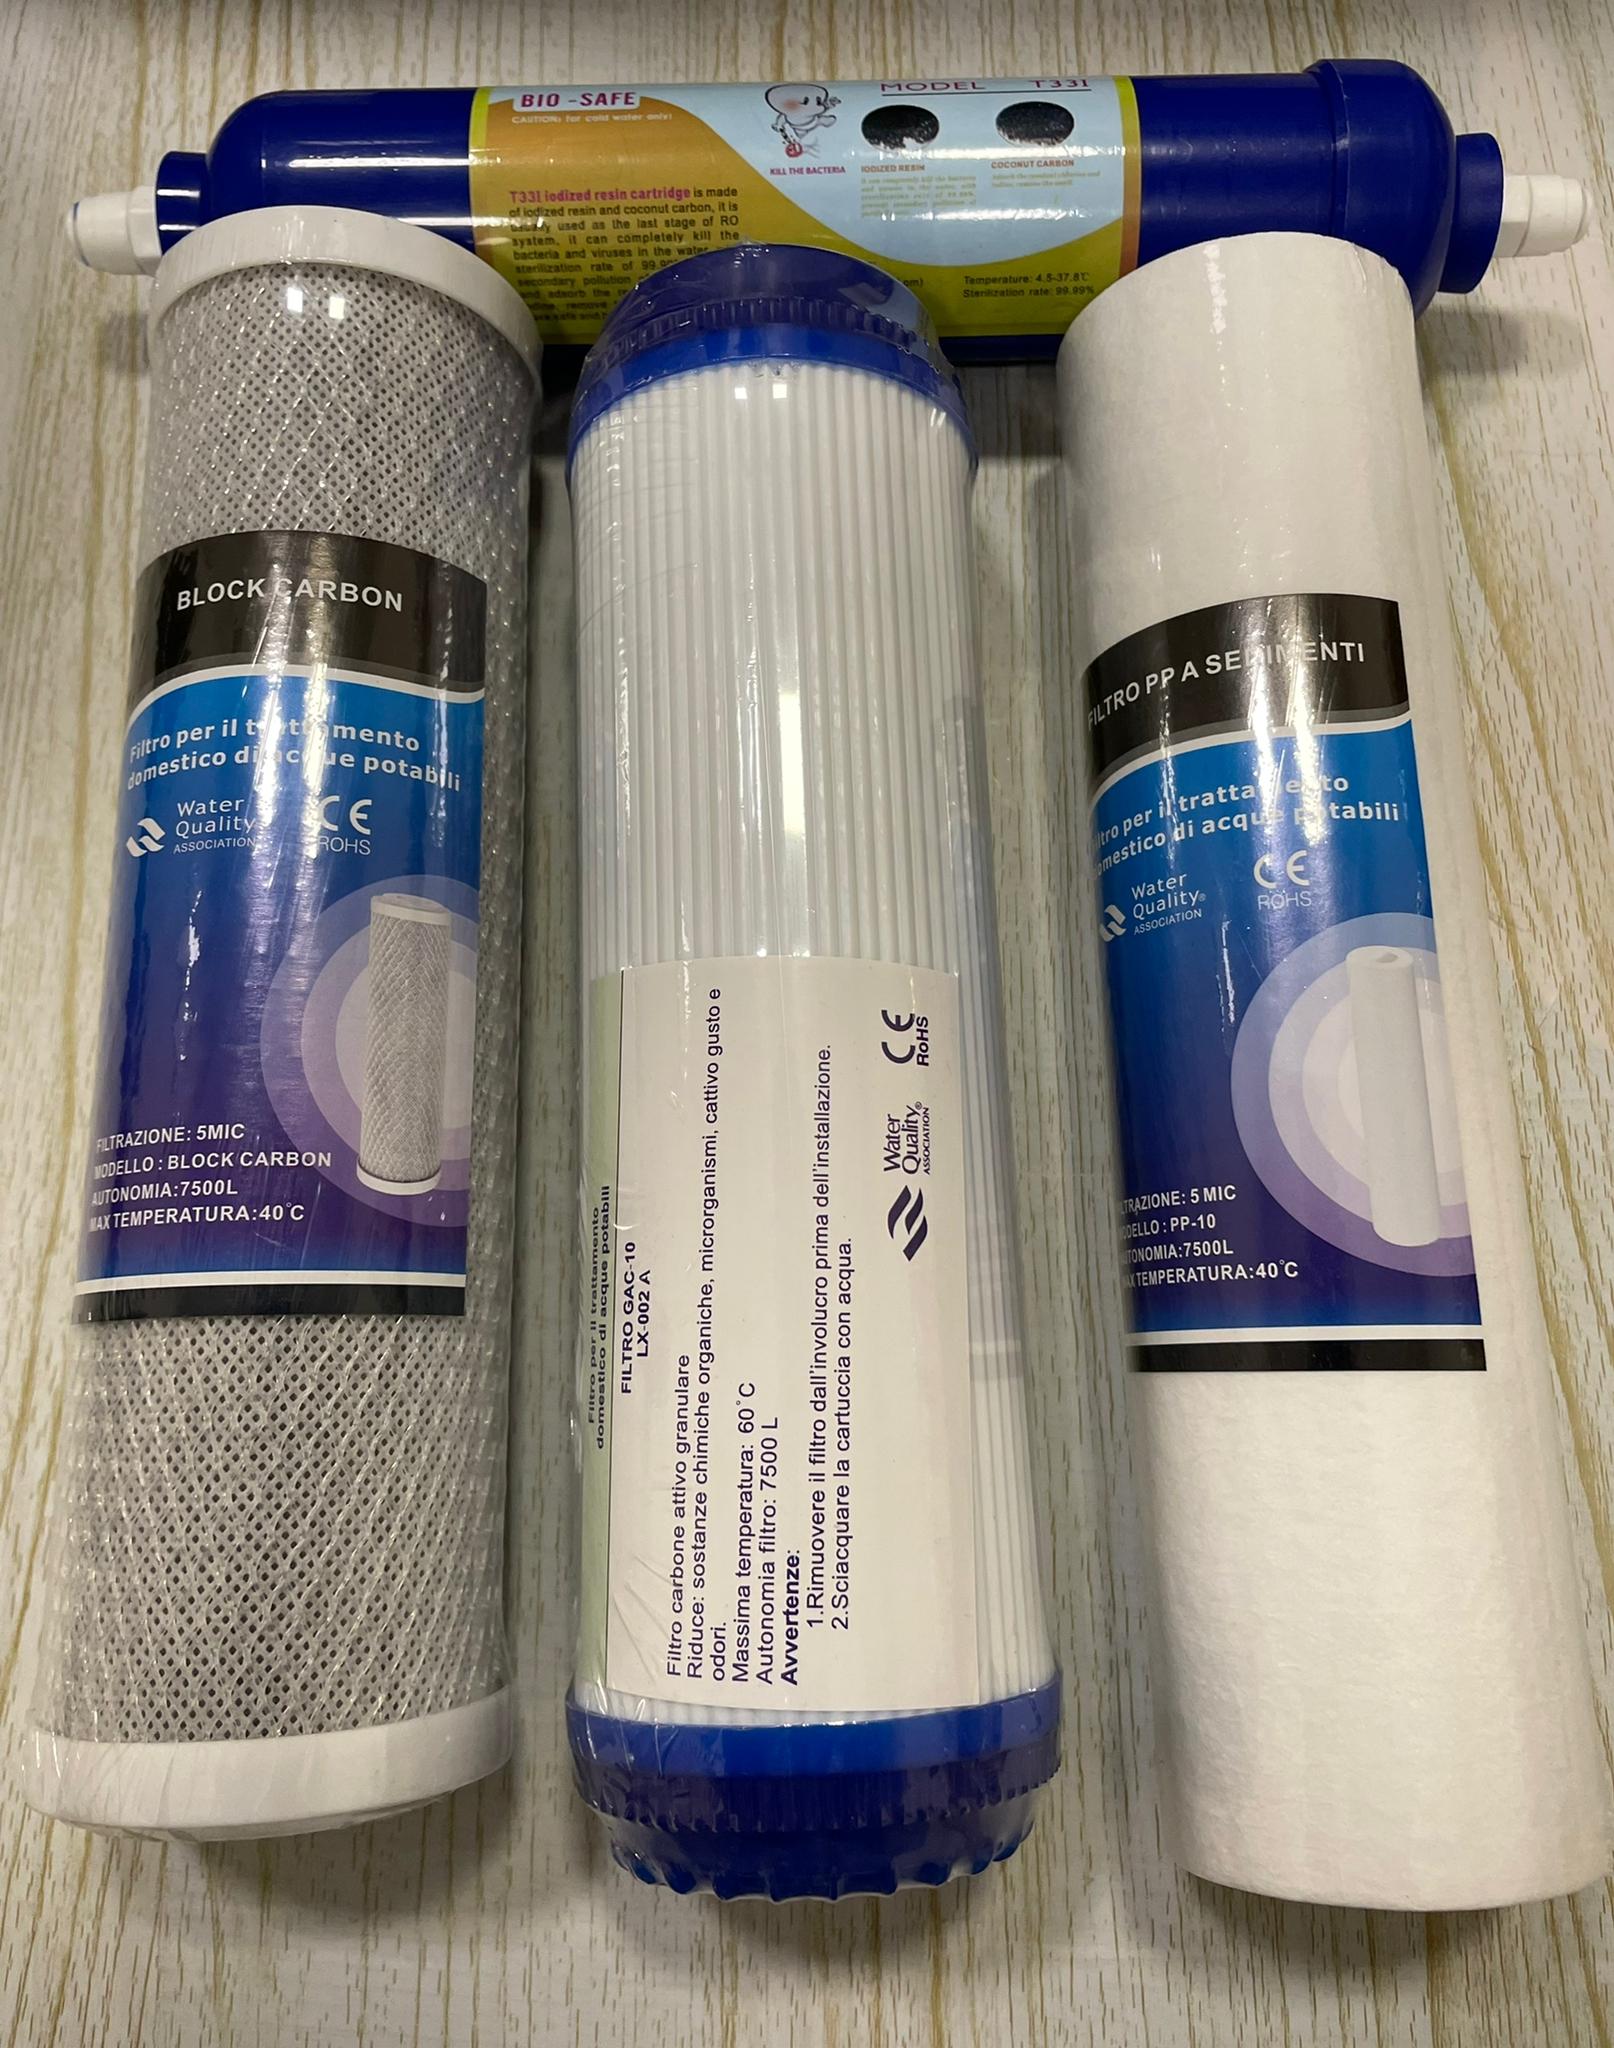 kit filtri per Depuratore Acqua Osmosi Inversa 10 pollici - La